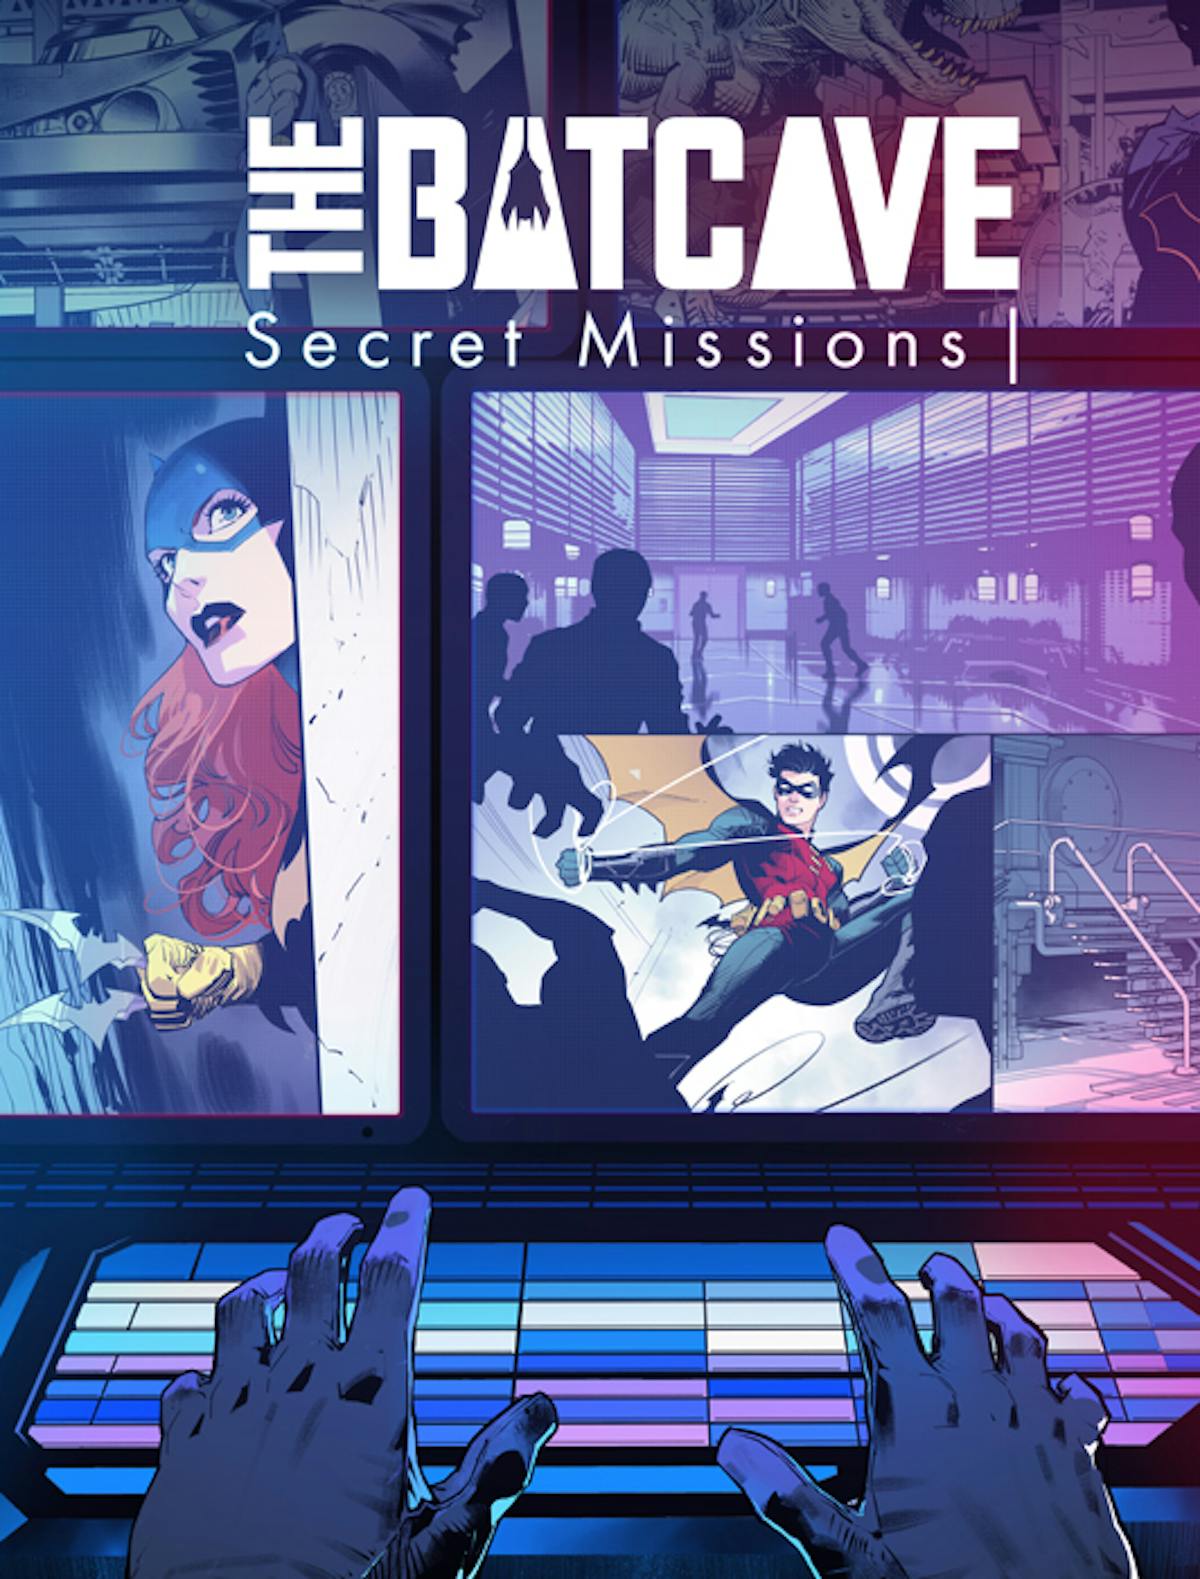 The Batcave -  Secret Missions Batman Escape Paris escape game